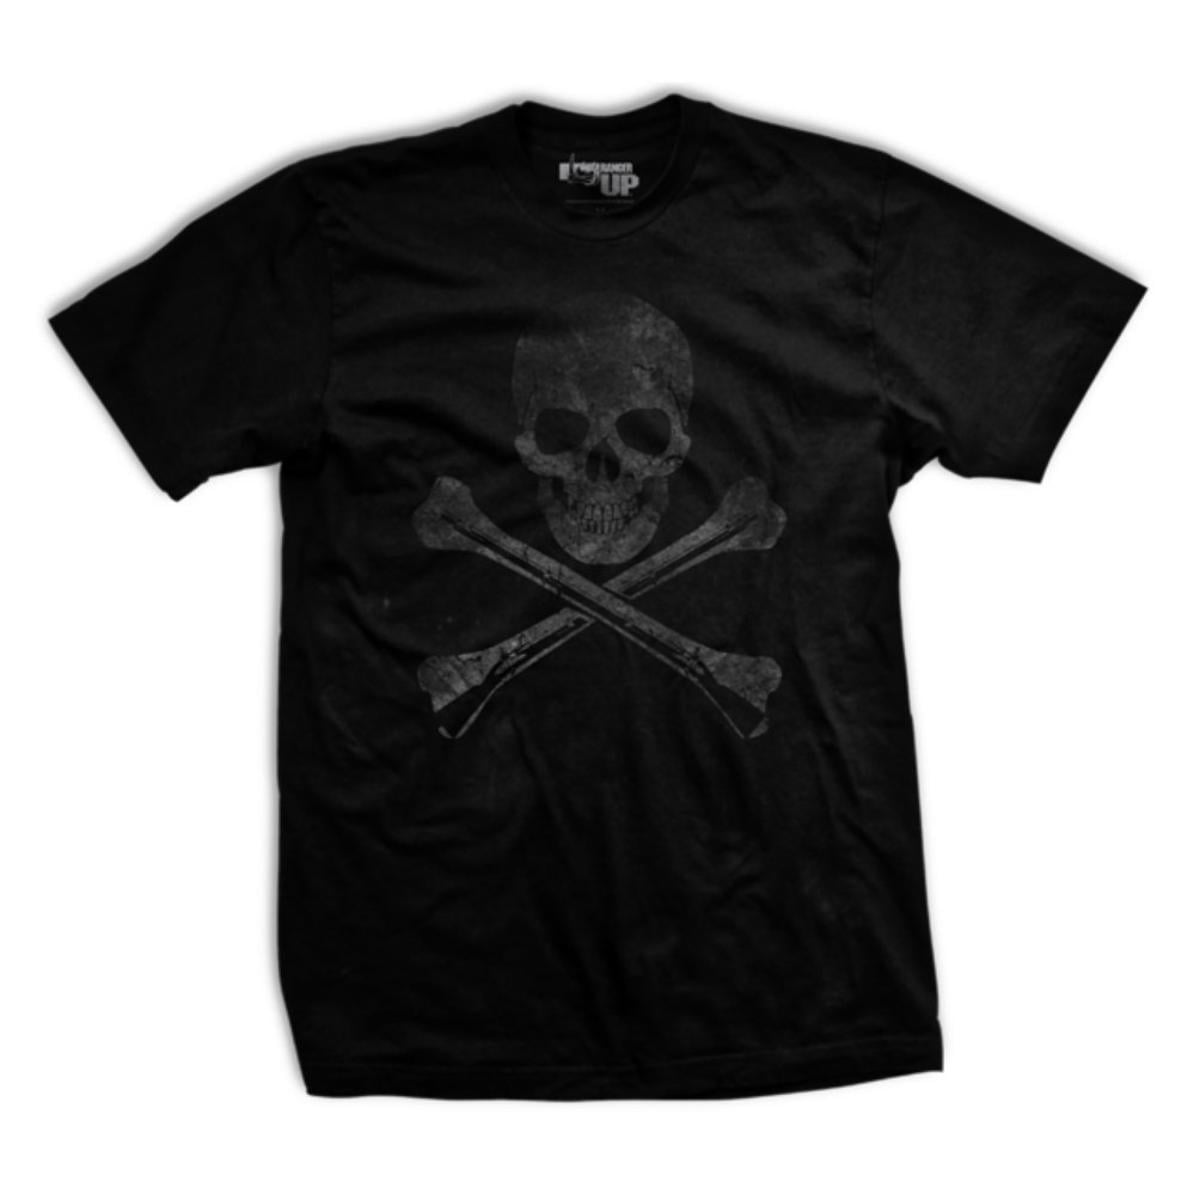 Ranger Up - Hoist the Black Flag Ultra-Thin Vintage T-Shirt from Ranger ...